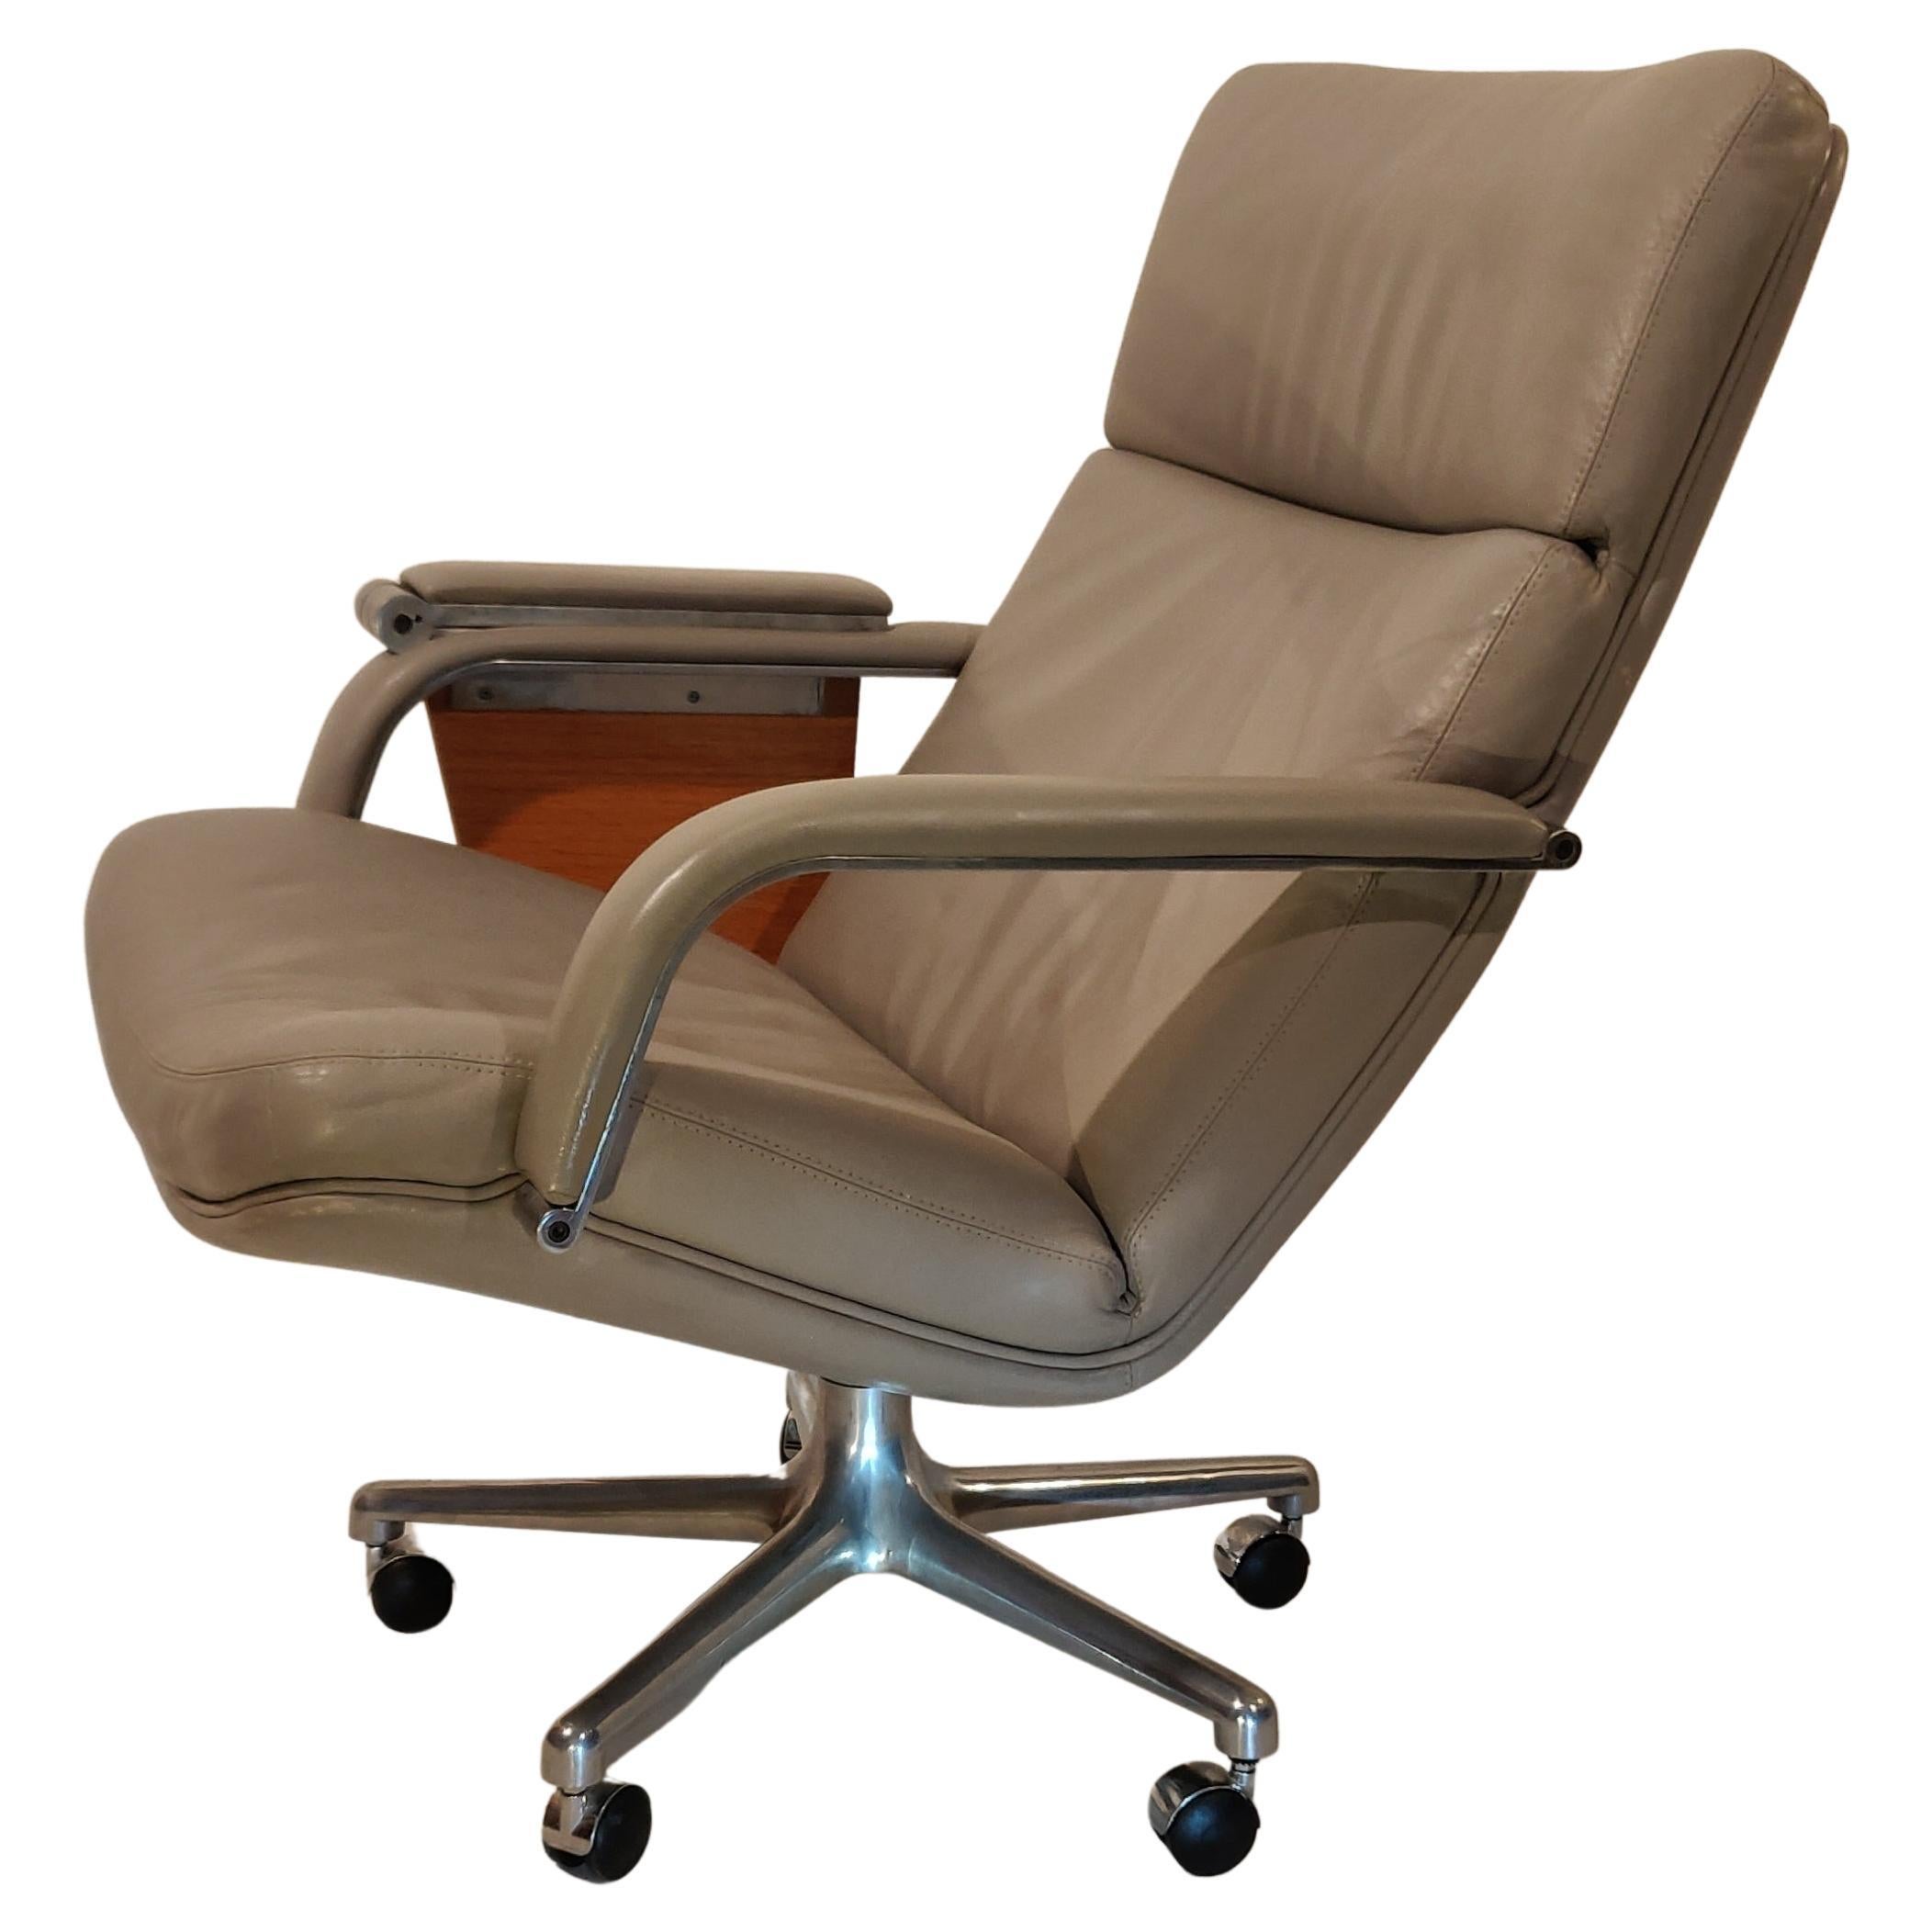 Sonderausführung des easy swivel chair, Typ F141, entworfen von Geoffrey Harcourt für Artifort, 1970. Weicher grauer Lederbezug und 5-Fußgestell aus Aluminium auf Rollen. Speziell mit integrierter, ausziehbarer Holzschreibtafel. Sehr guter Zustand.